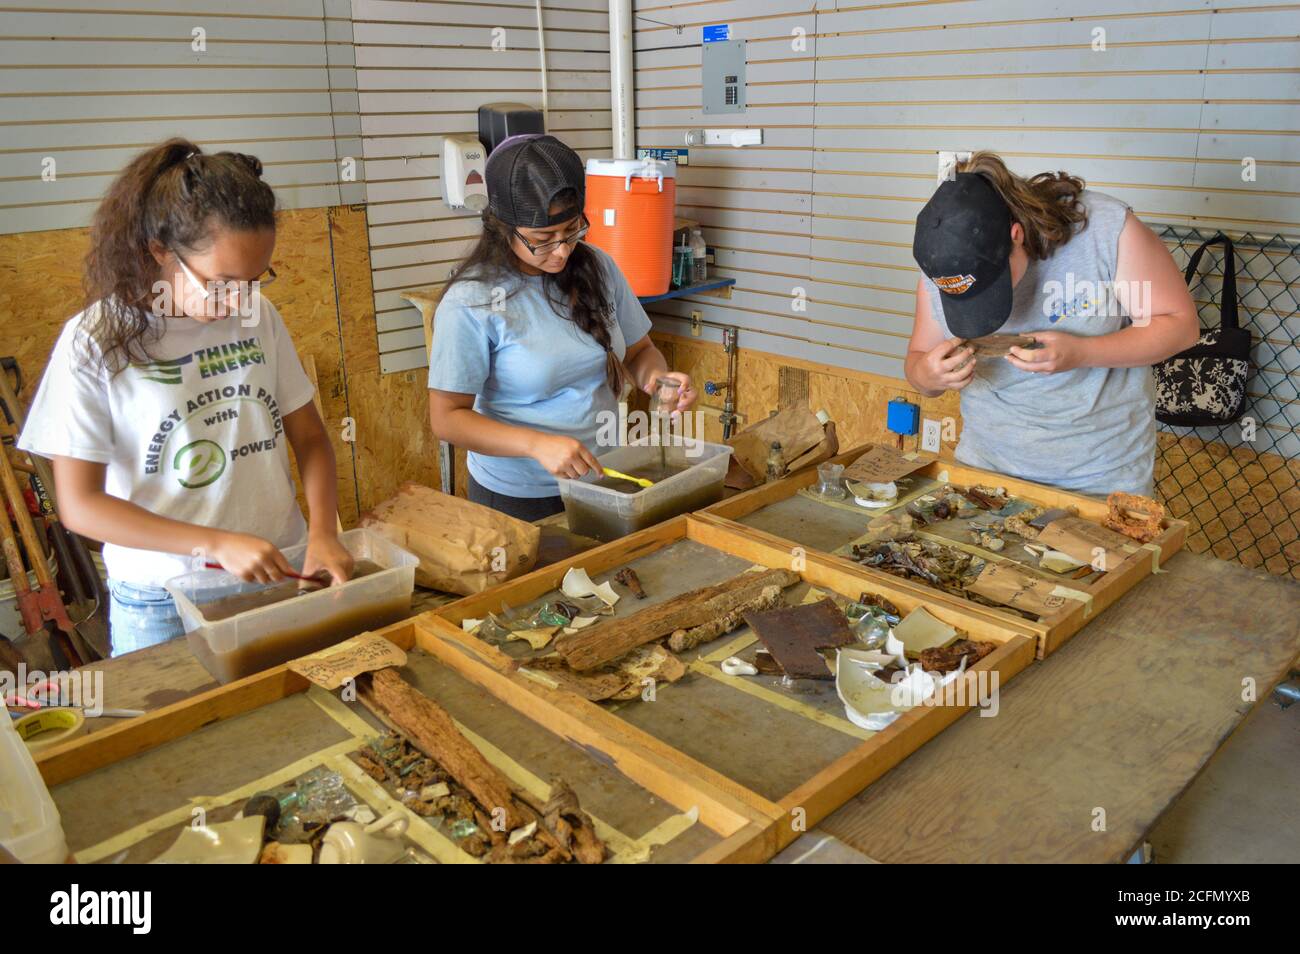 HAZLETON, PA - GIUGNO 30: Da sinistra, Milka Cerda, Lizbeth Fuentes e Teresa Robbins vedere e pulire manufatti scoperti nel sito di un d archeologico Foto Stock